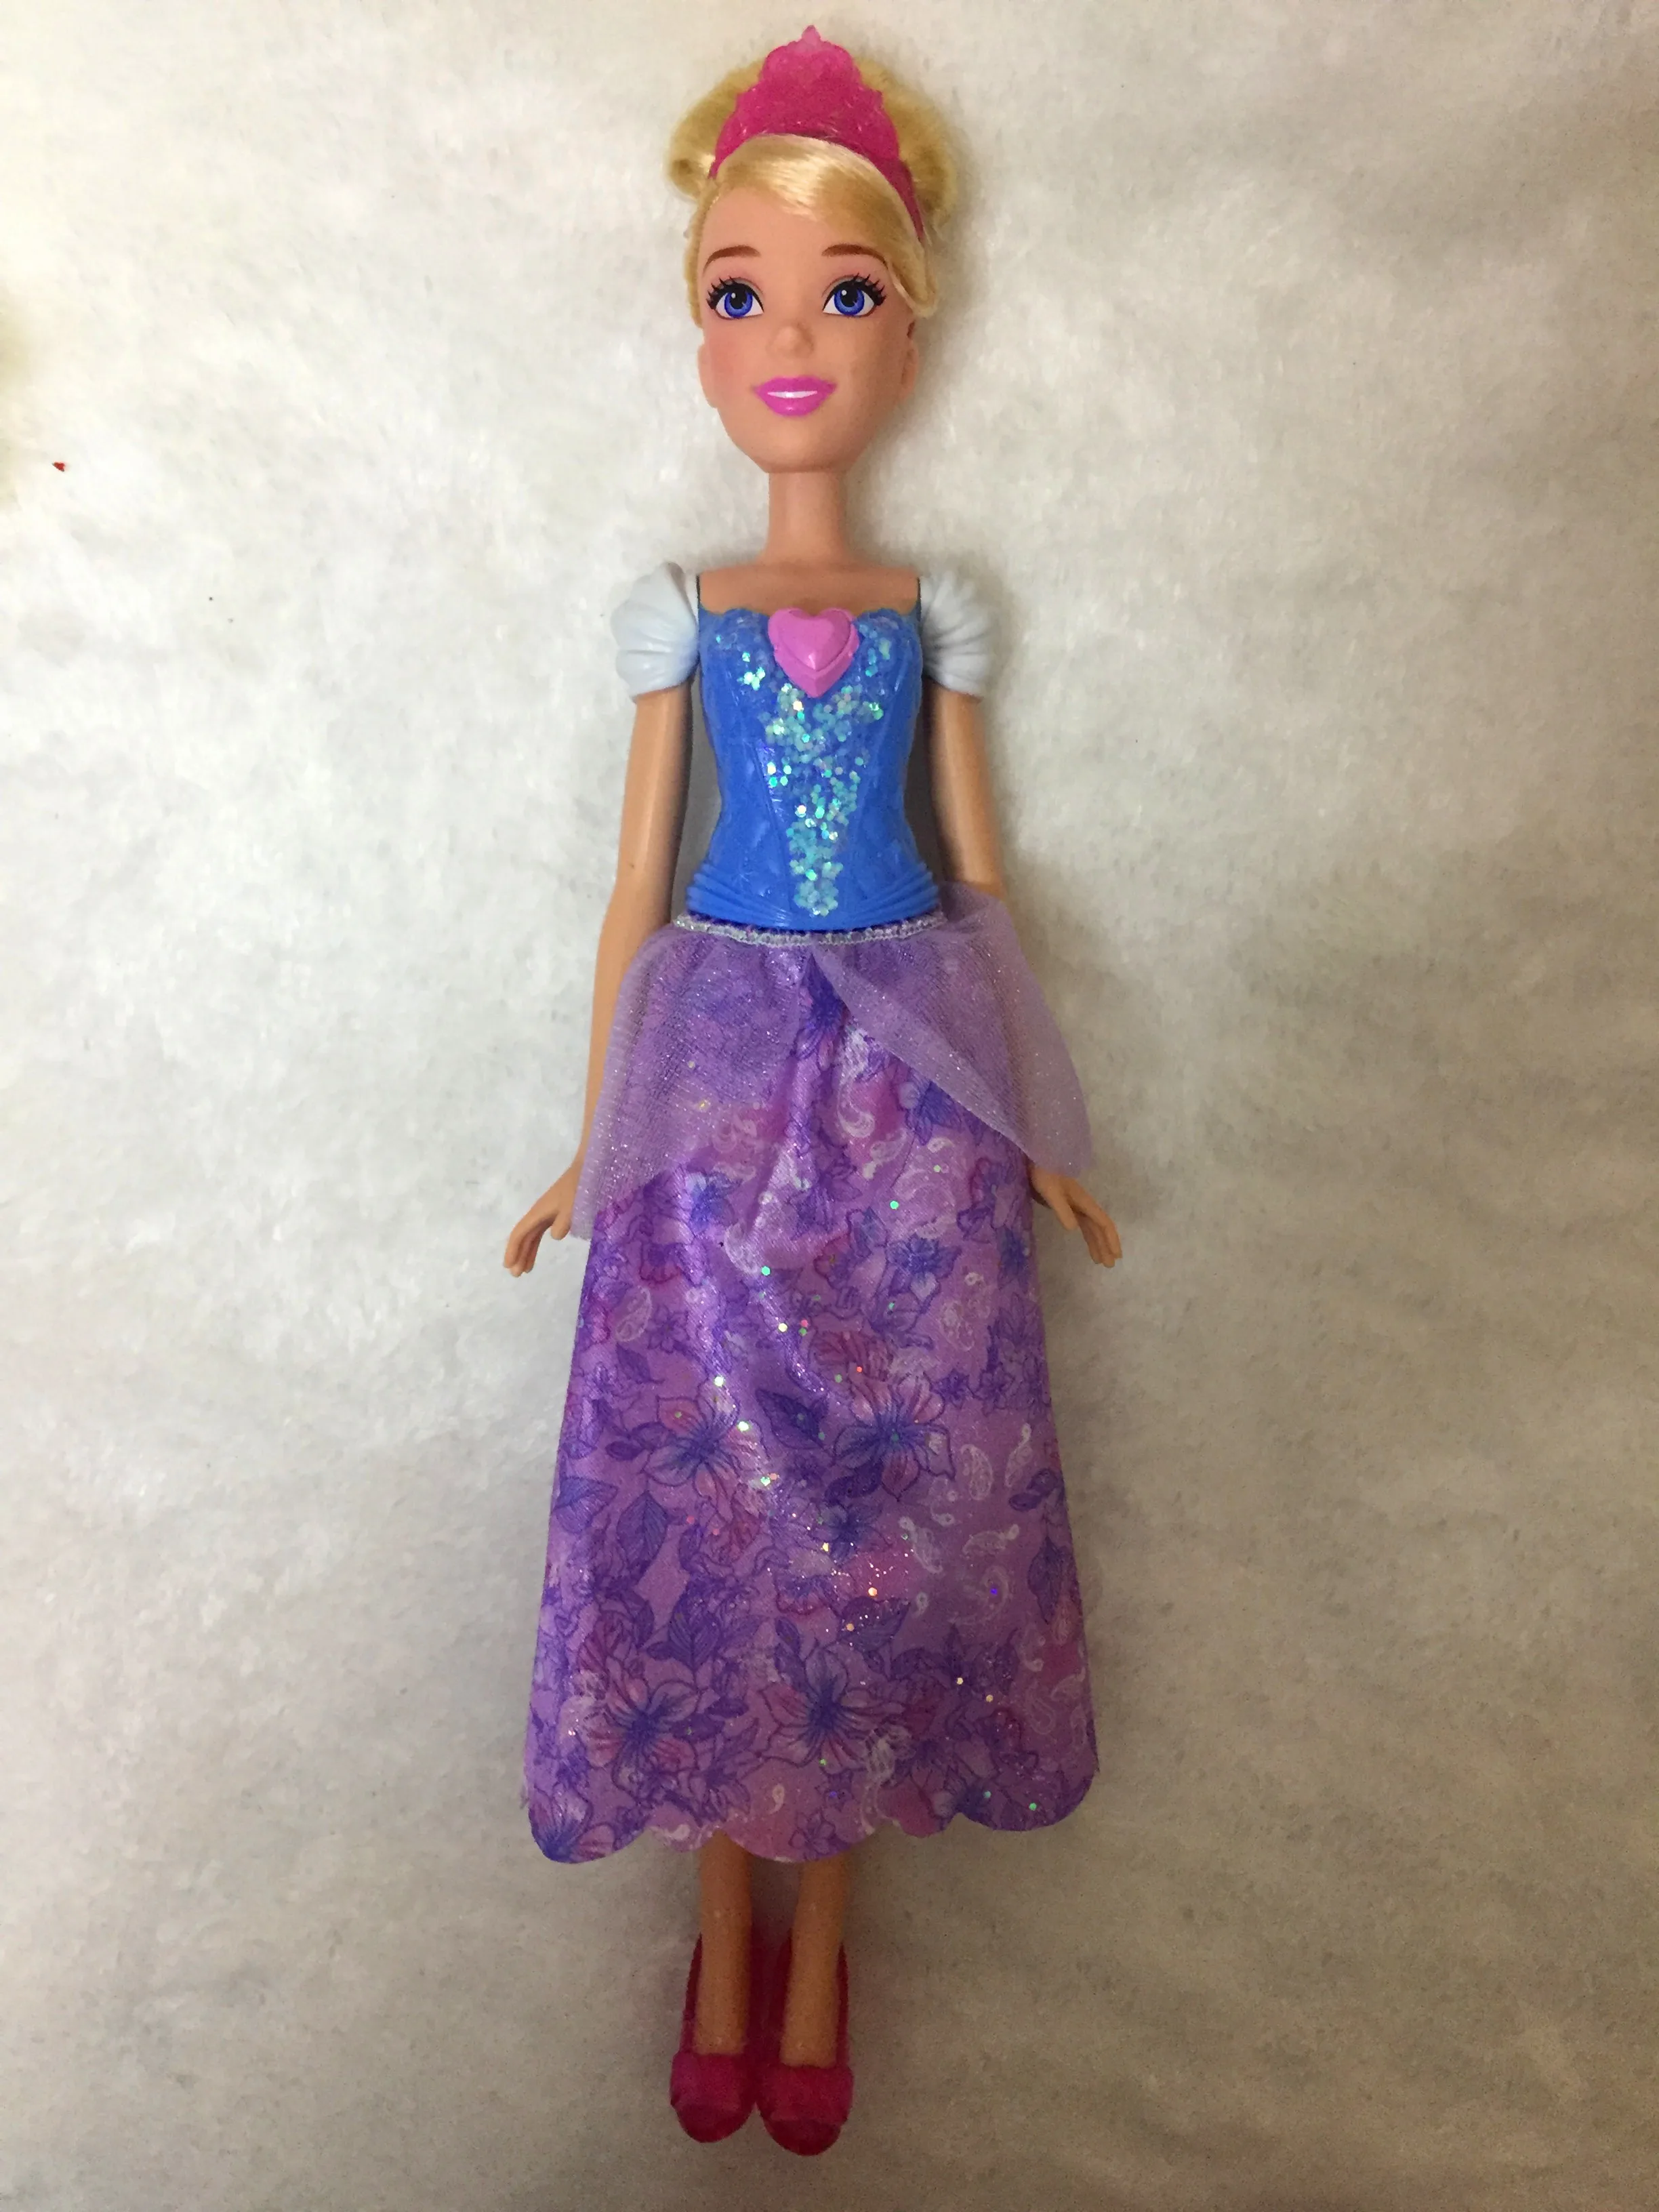 Куклы-Рапунцель Принцесса Жасмин кукла Белоснежка Ариэль Белль Рапунцель Игрушки для девочек игрушки bjd куклы для детей - Цвет: Cinderella